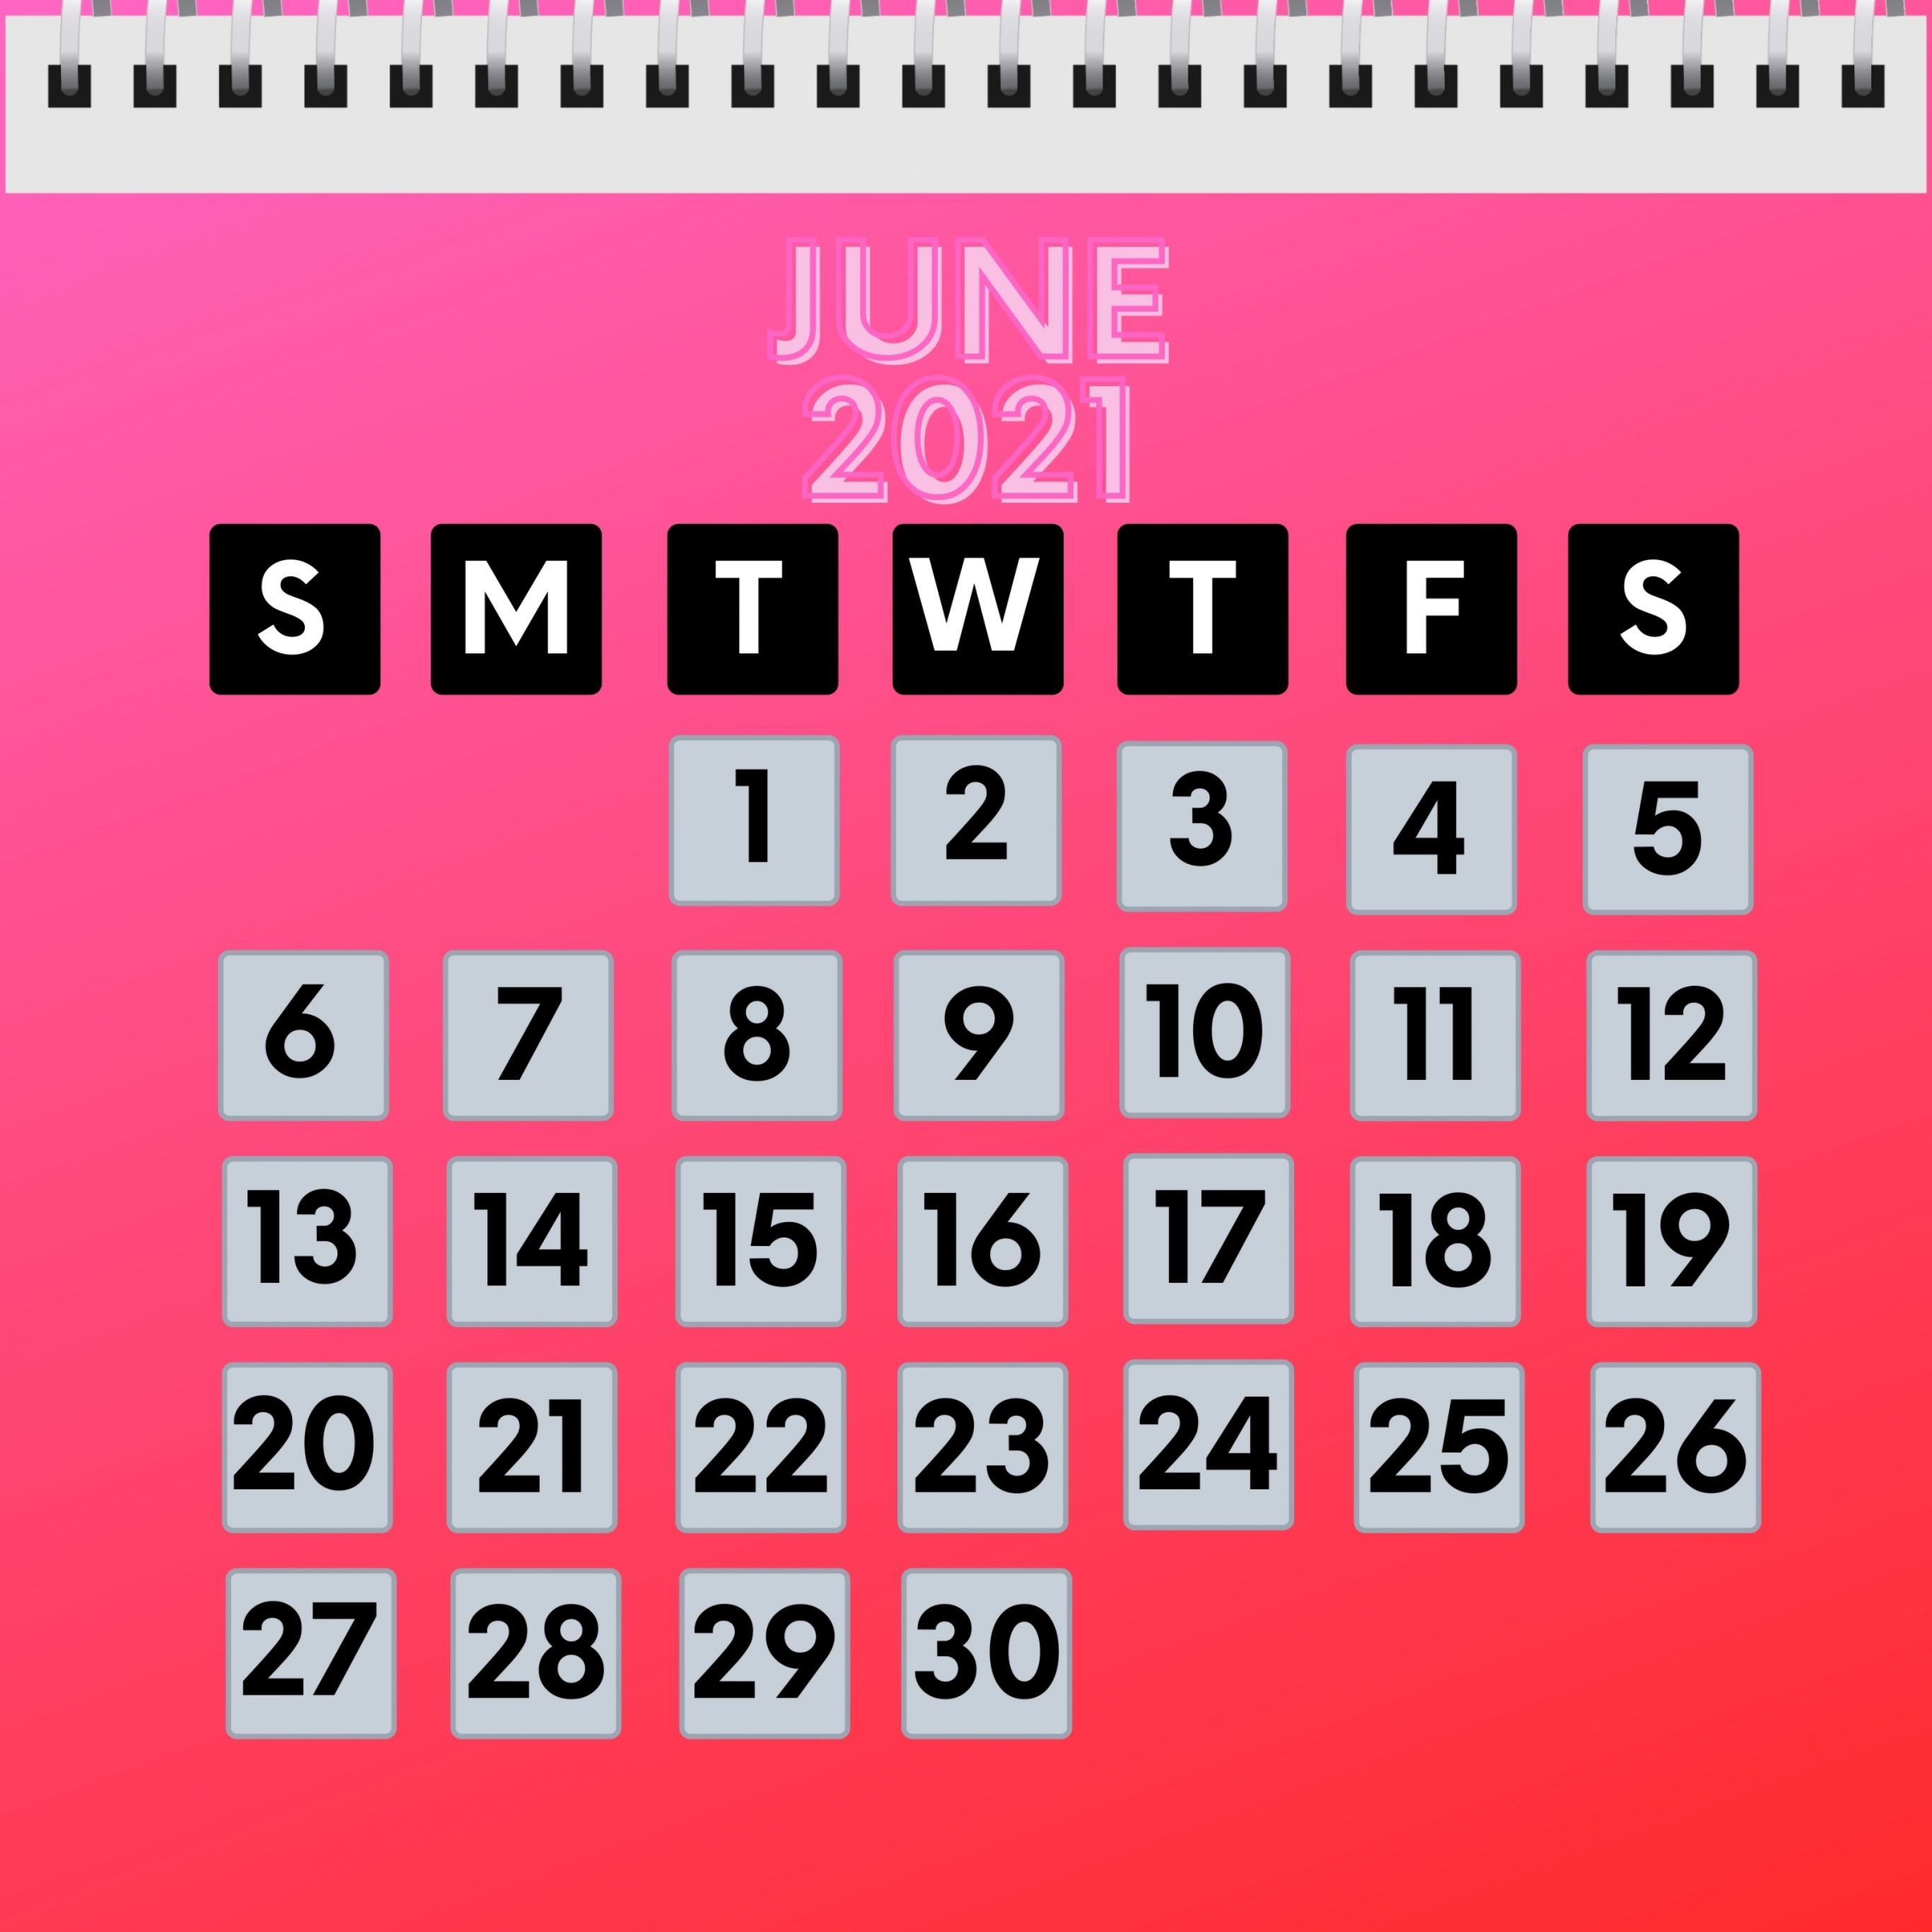 2732x2732 wallpapers 4k iPad Pro June 2021 Calendar iPad Wallpaper 2732x2732 pixels resolution